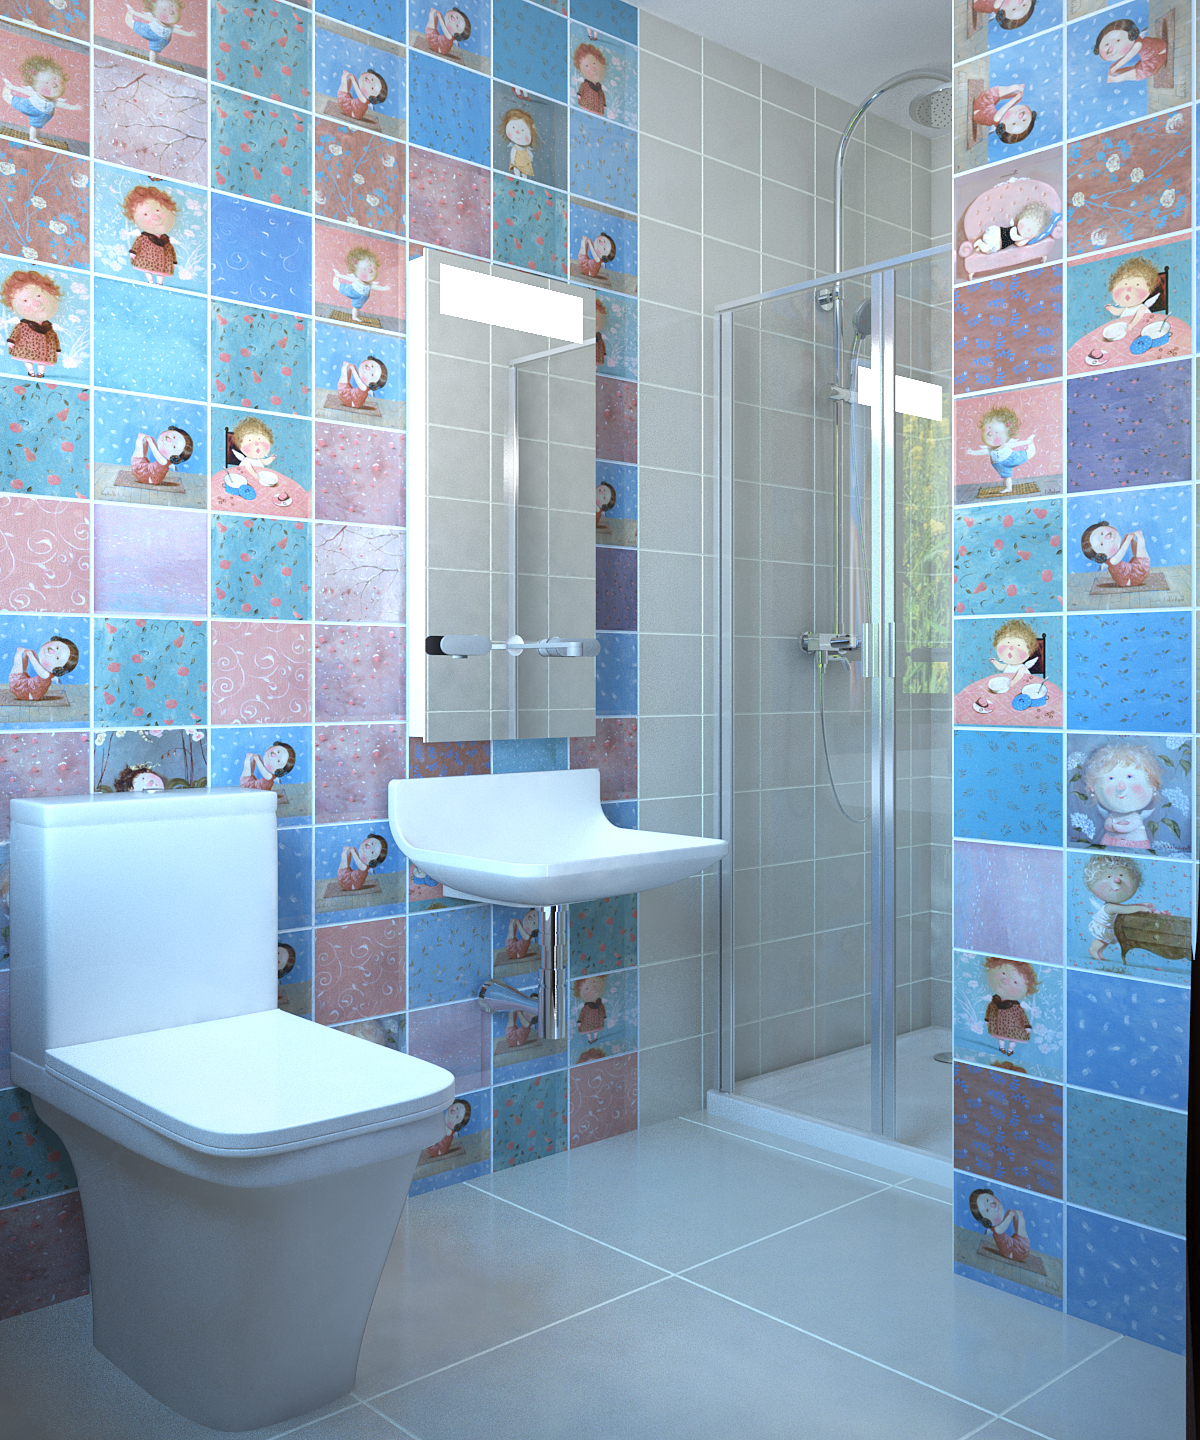 Conception et visualisation de deux salles de bain dans 3d max vray 2.0 image